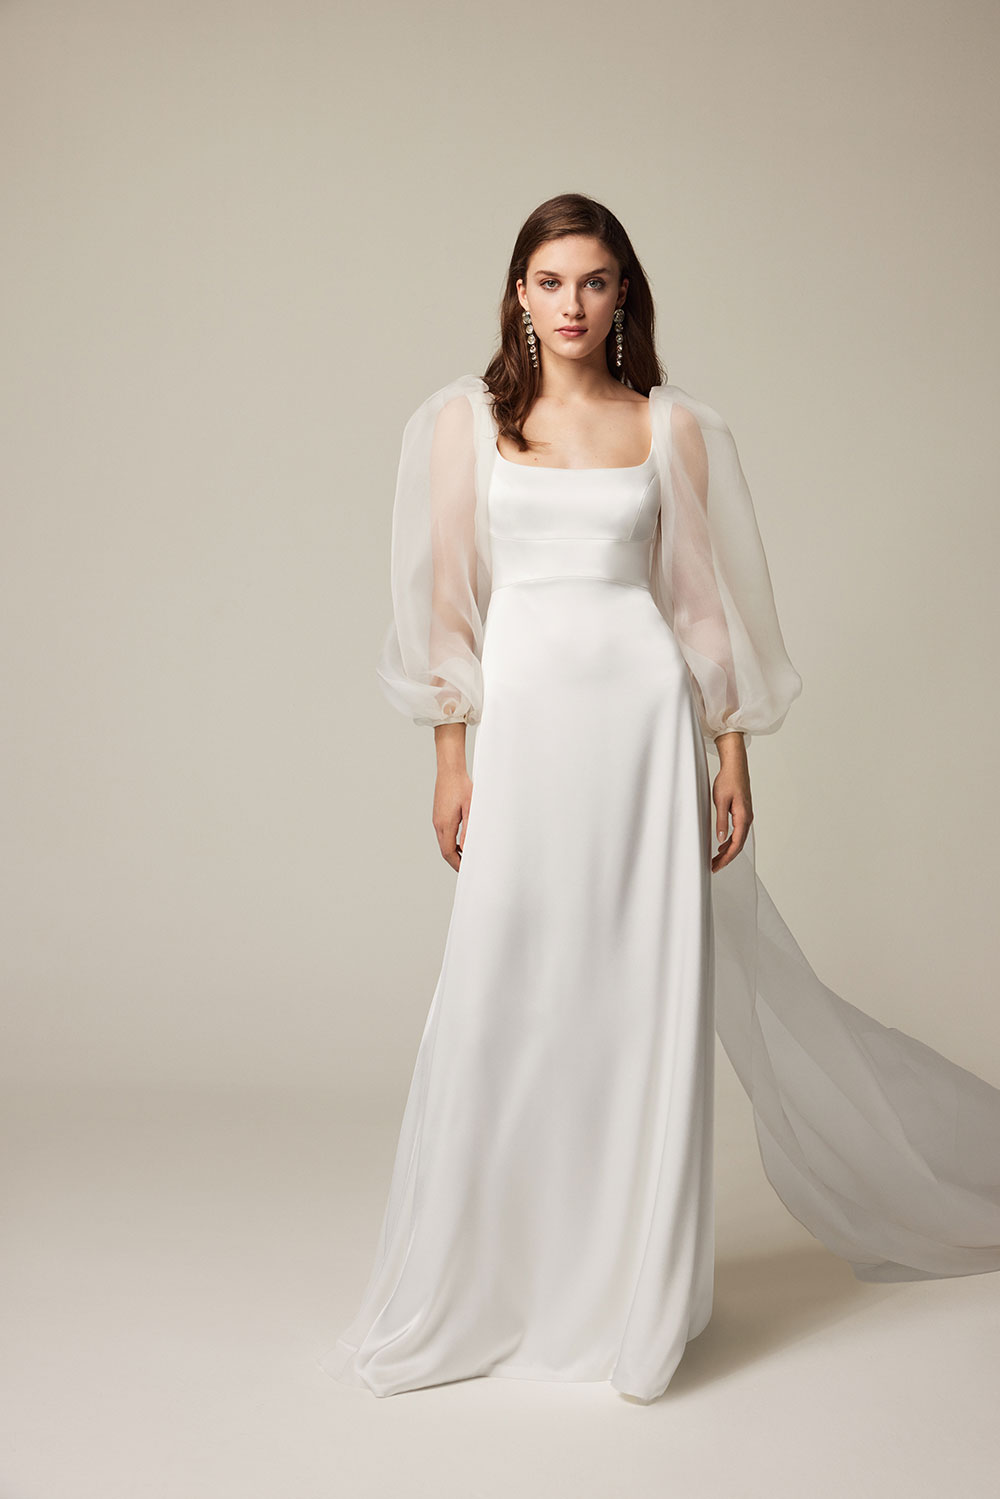 Jesus Peiro 2507 wedding dress with square neck and cape